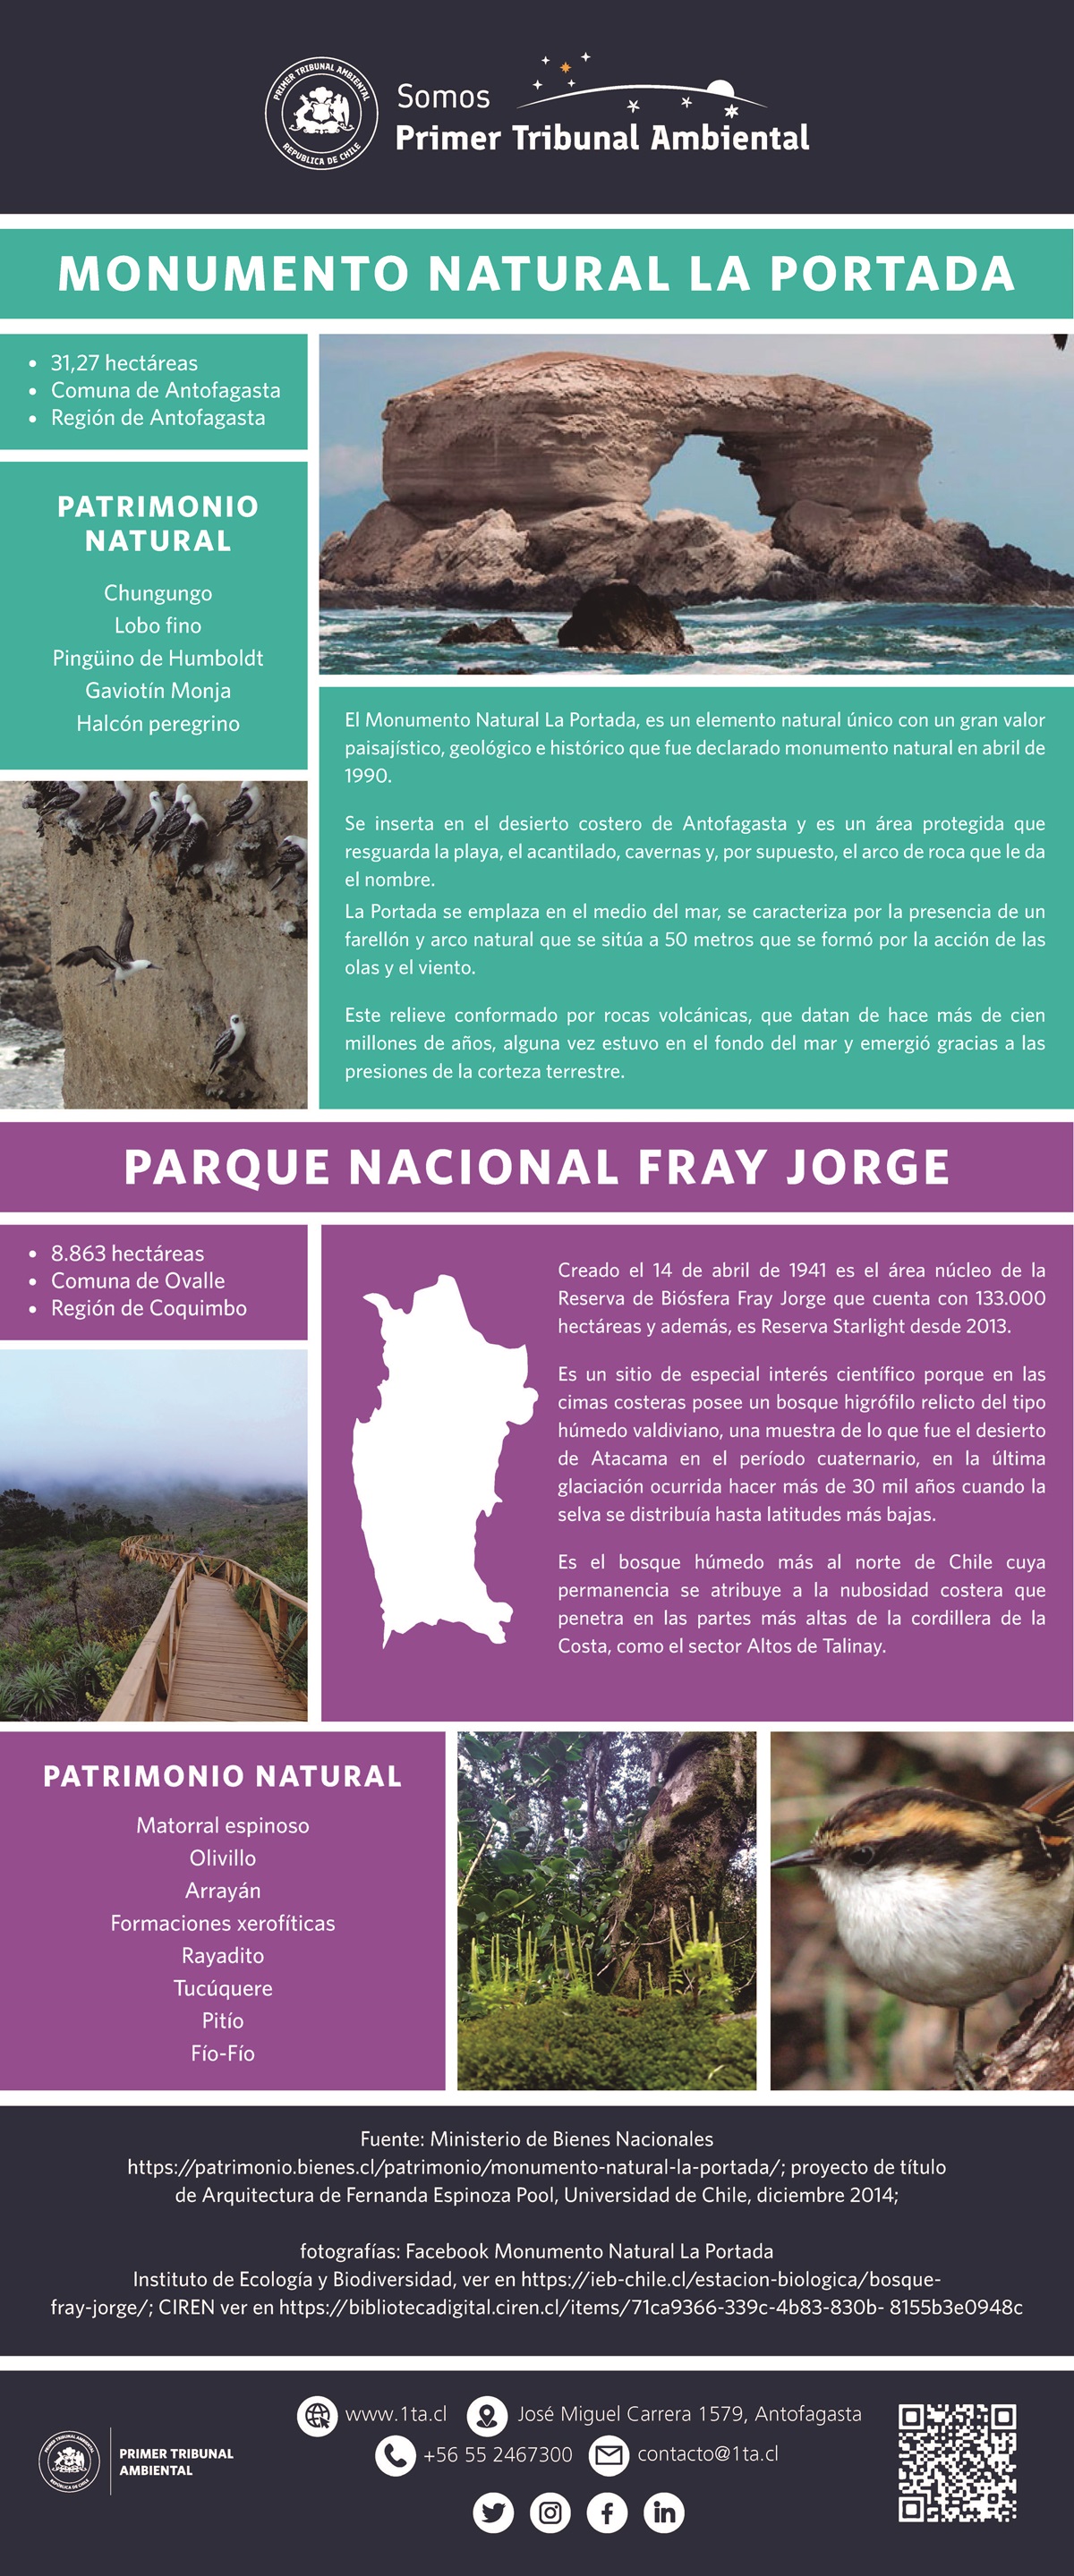 Conoce más del Monumento Natural La Portada y Parque Nacional Fray Jorge